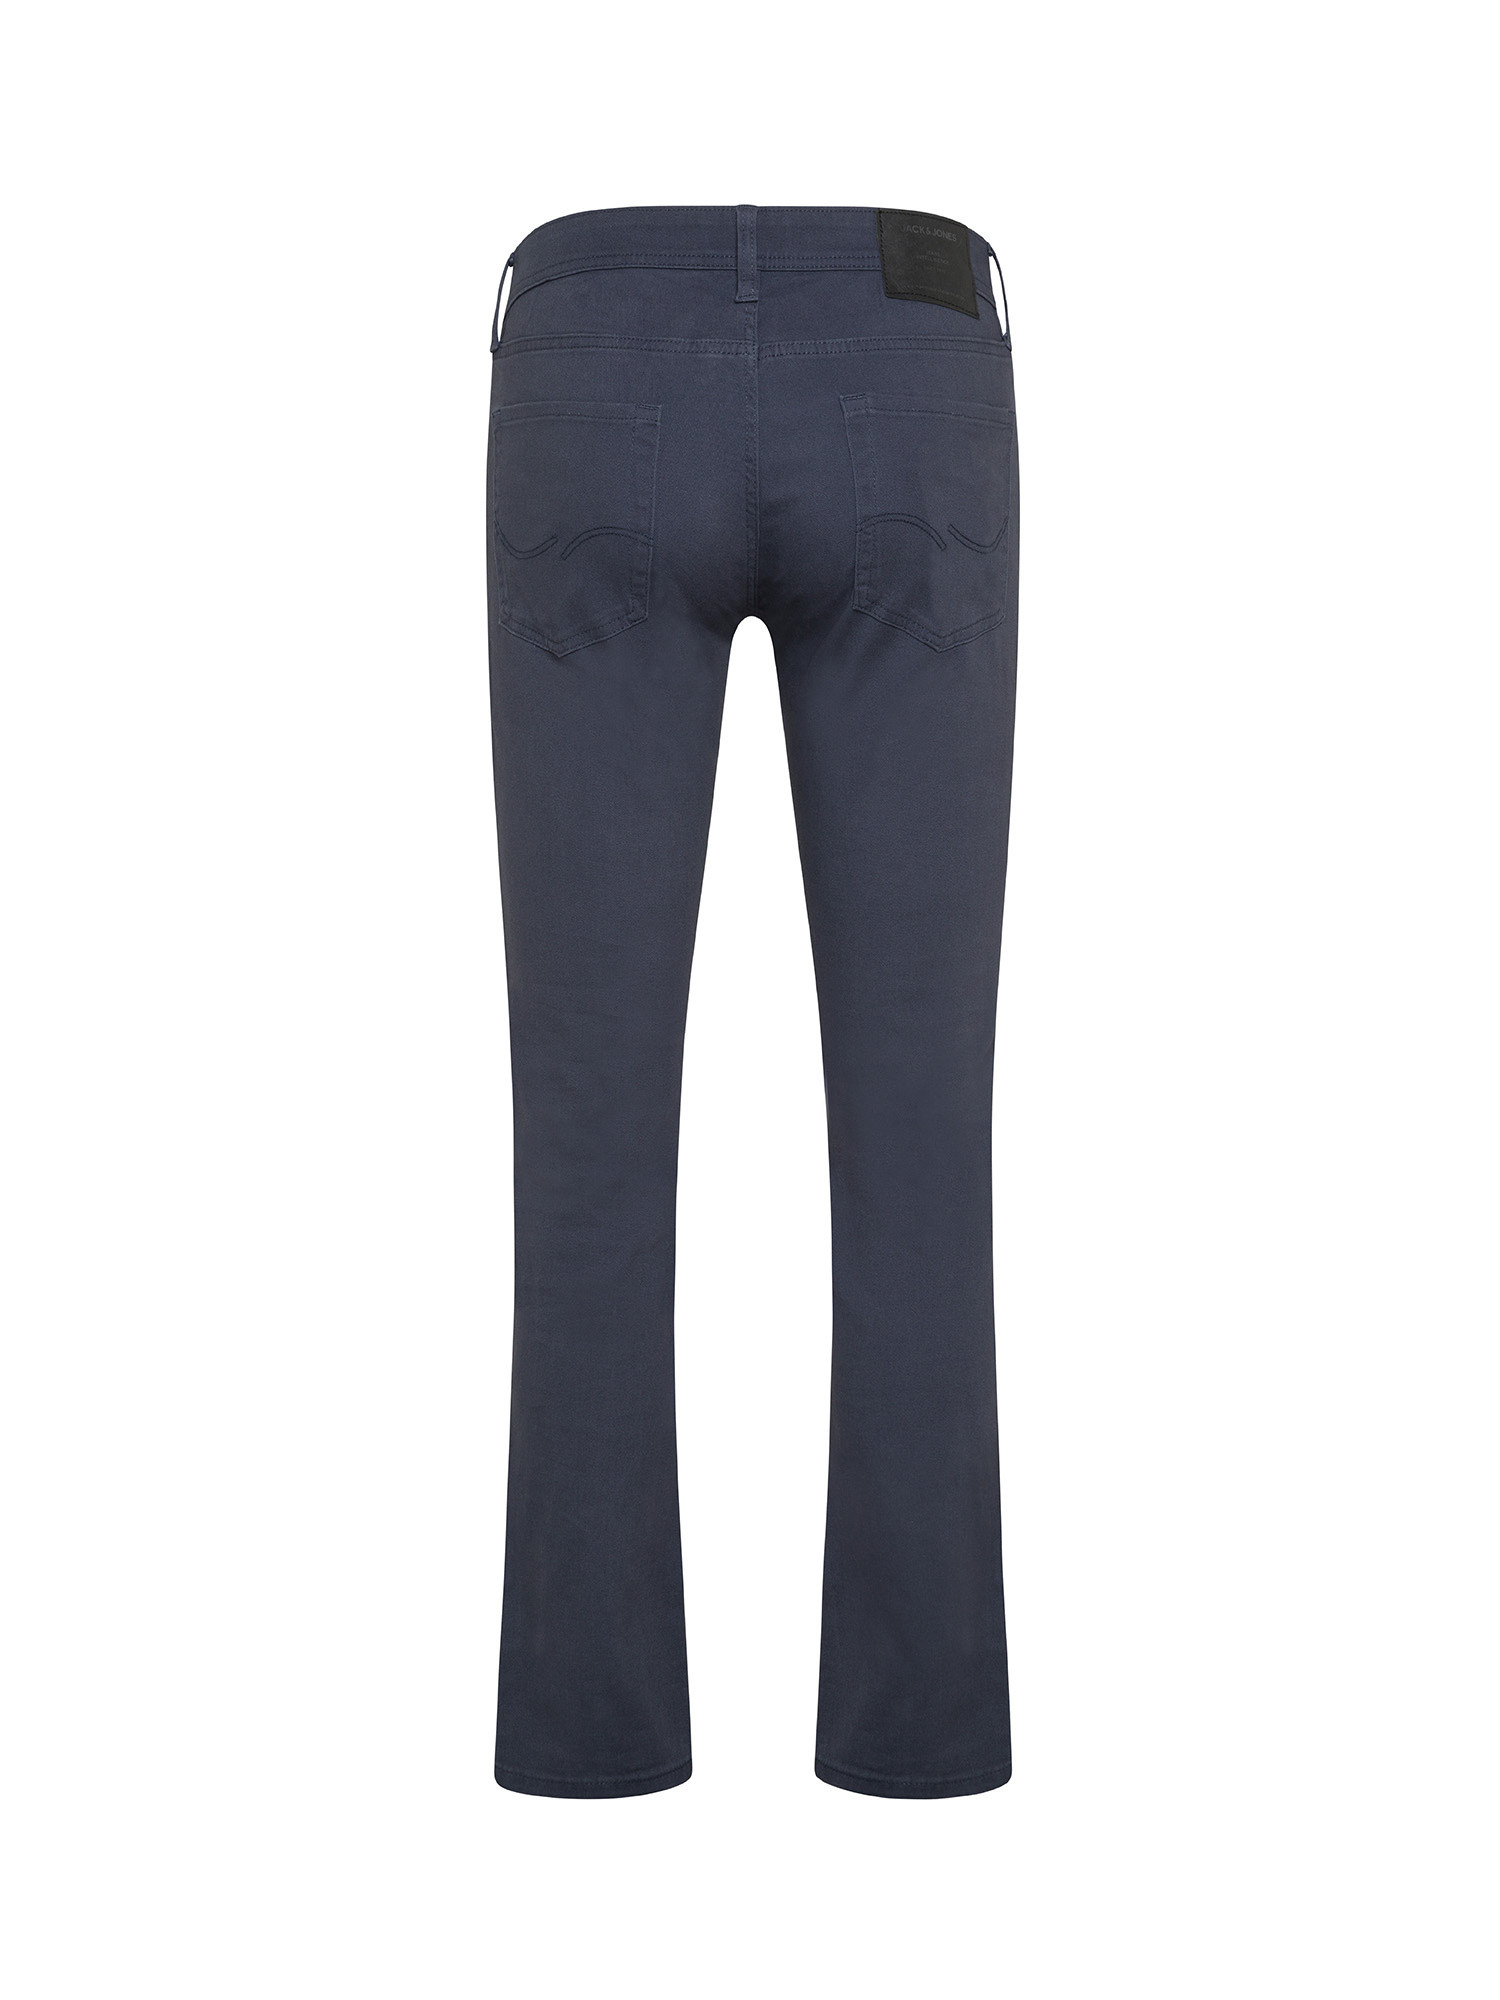 Jack & Jones - Slim fit five pocket trousers, Dark Blue, large image number 1